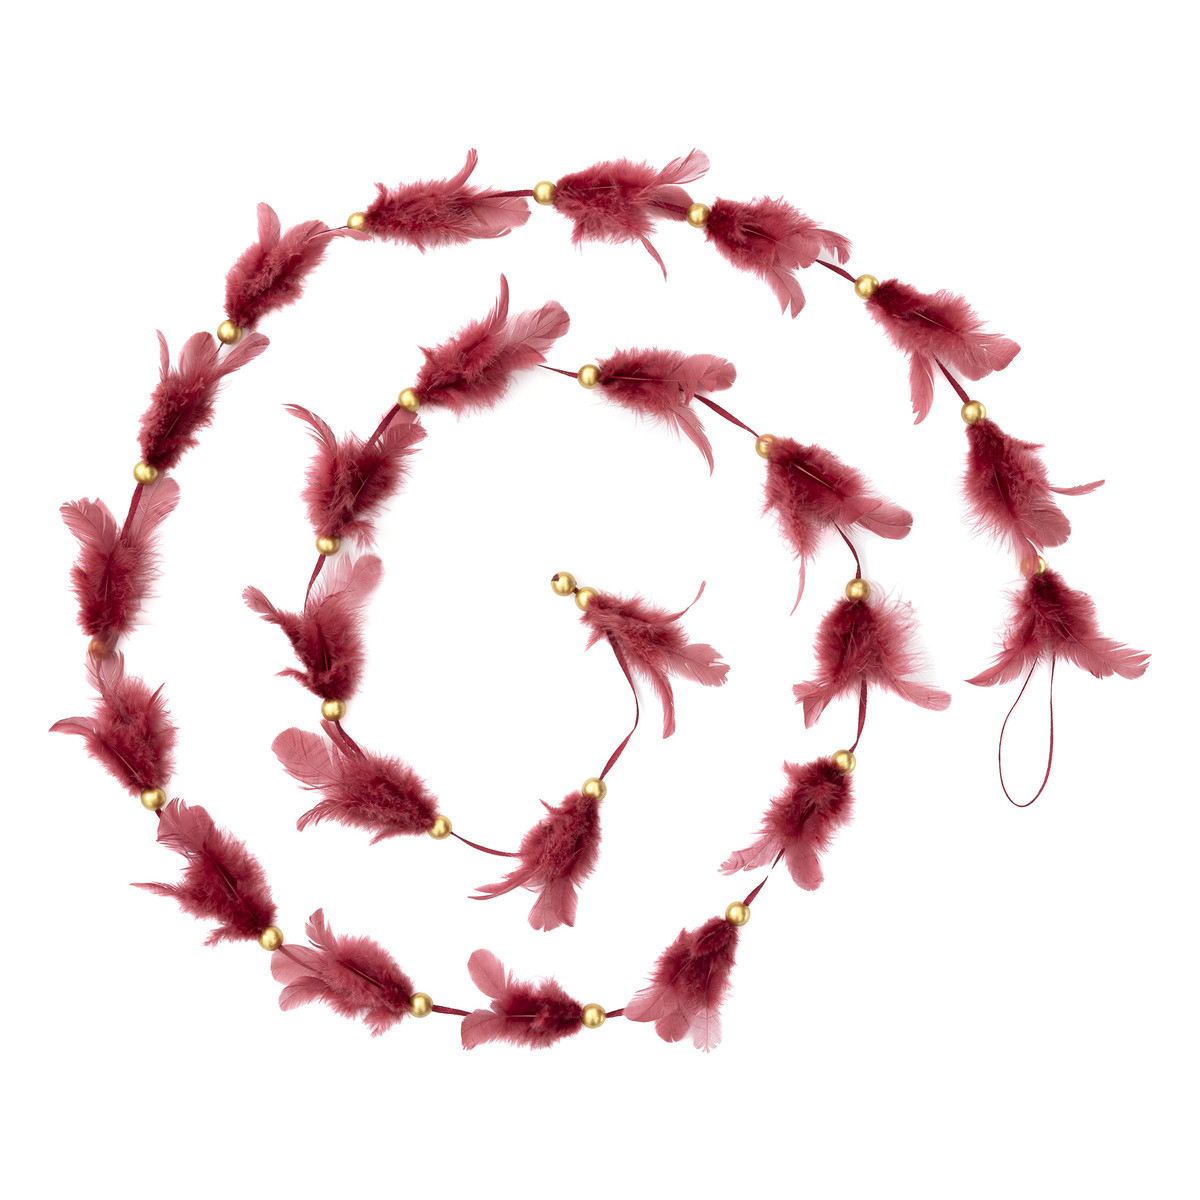 Guirlande de Noël Bouquet de Plume rouge sur ruban satin et perles Or L 200  cm - Guirlandes de noël et cheveux d'ange pour sapin